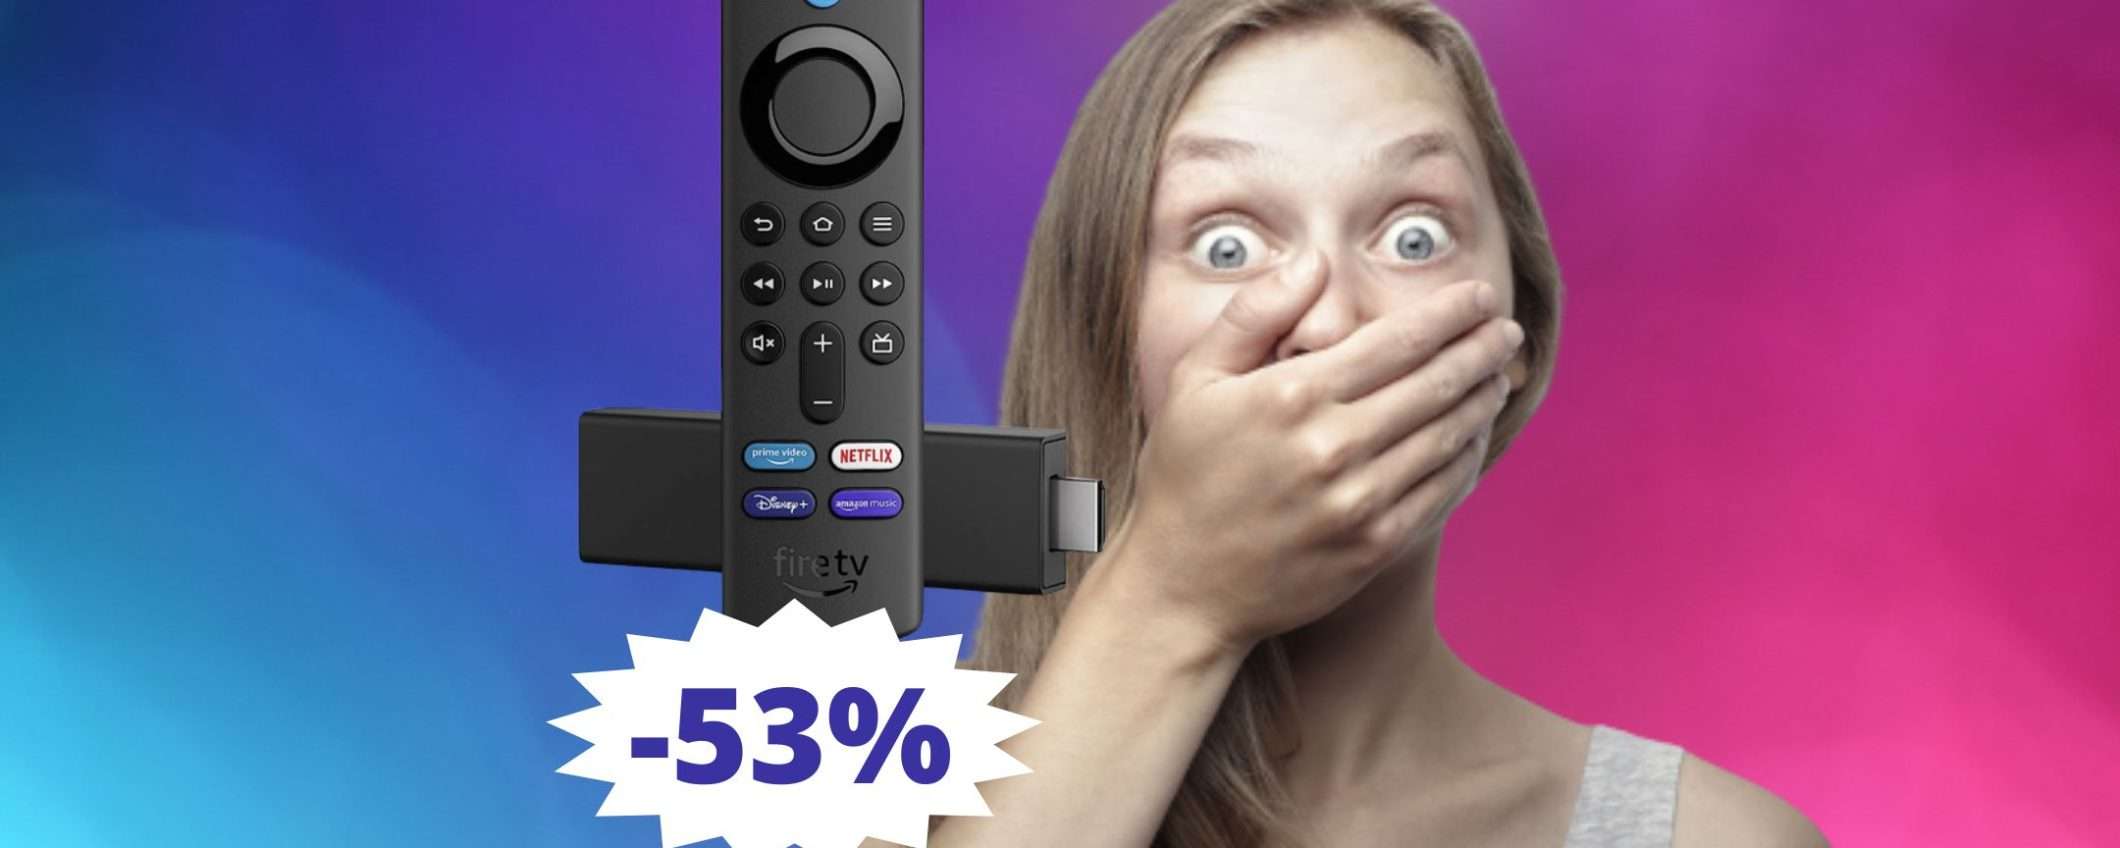 Amazon Fire TV Stick 4K: sconto MOZZAFIATO del 53%